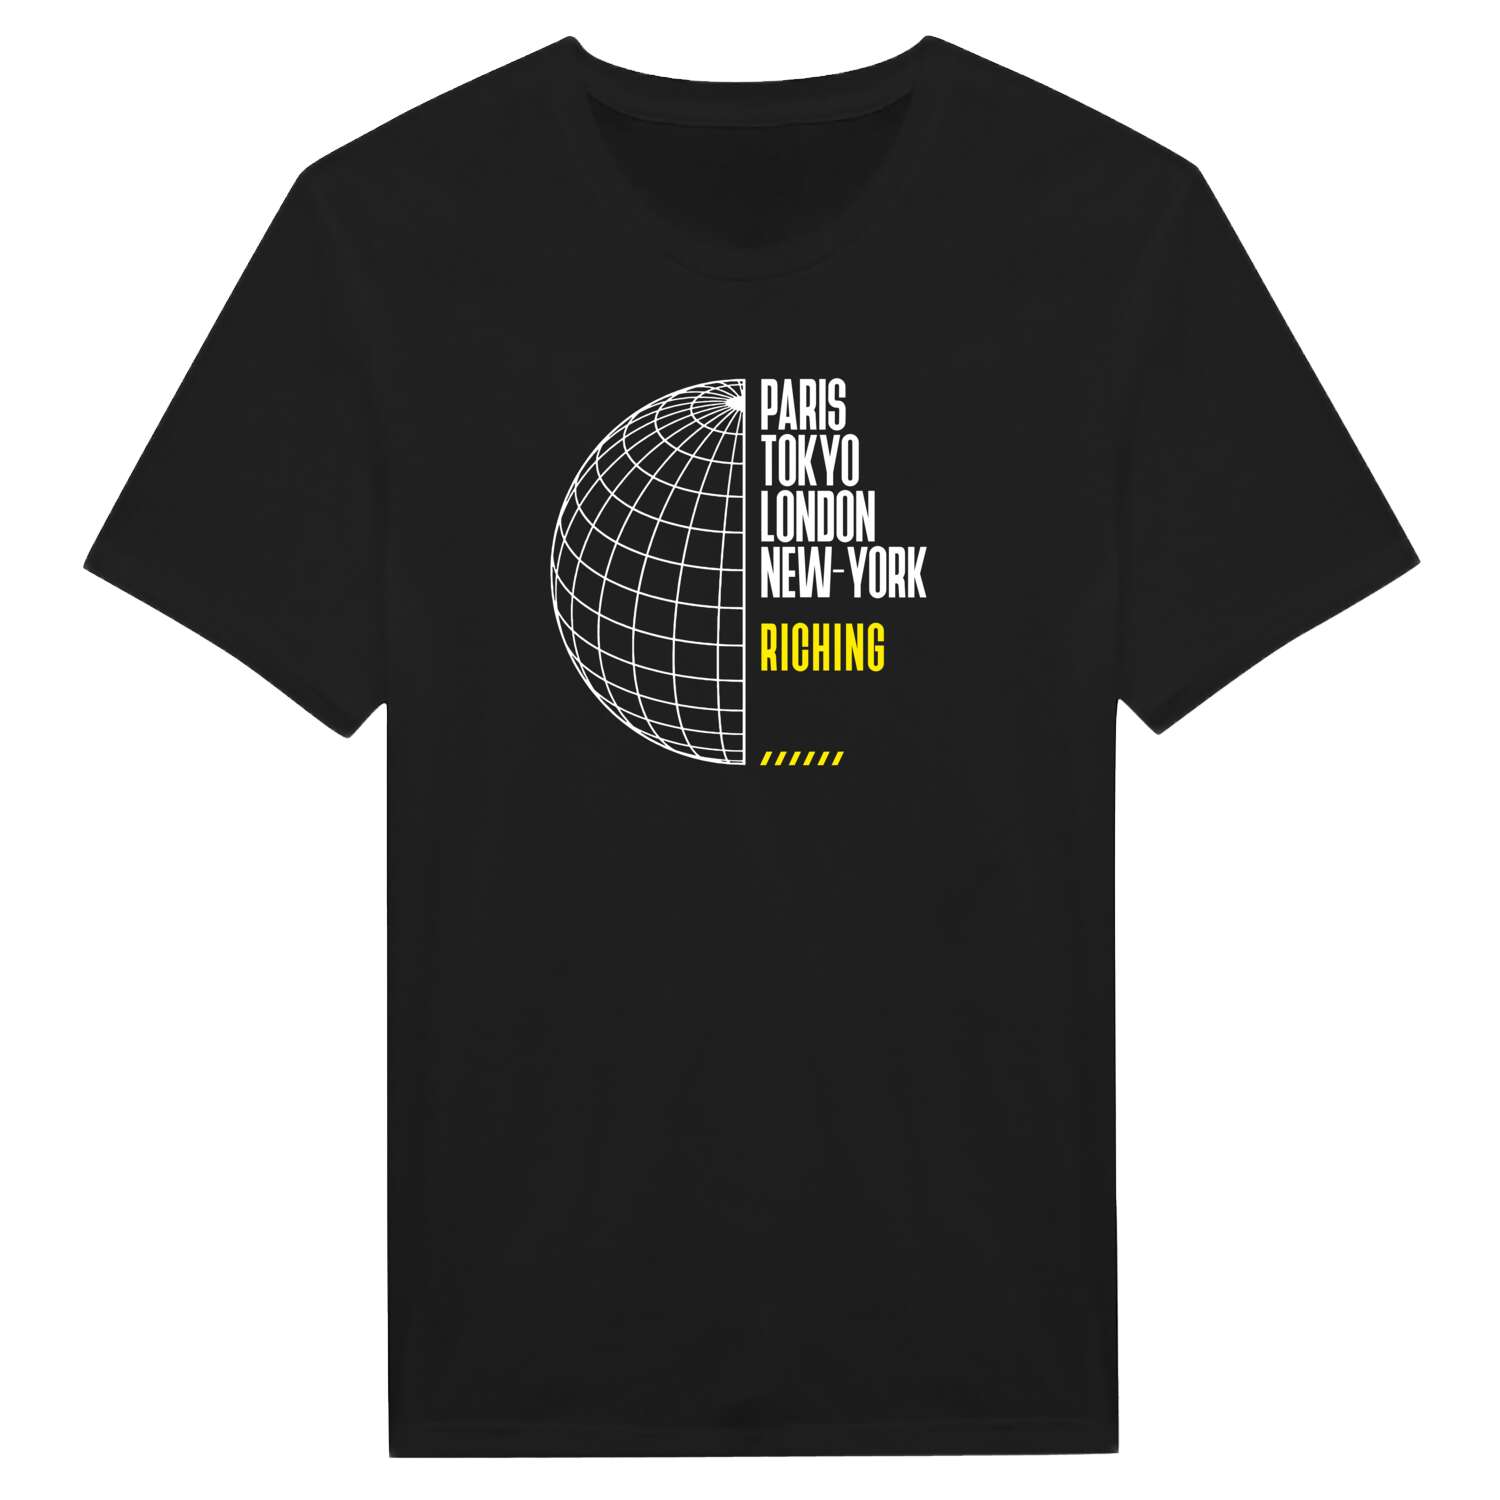 Riching T-Shirt »Paris Tokyo London«